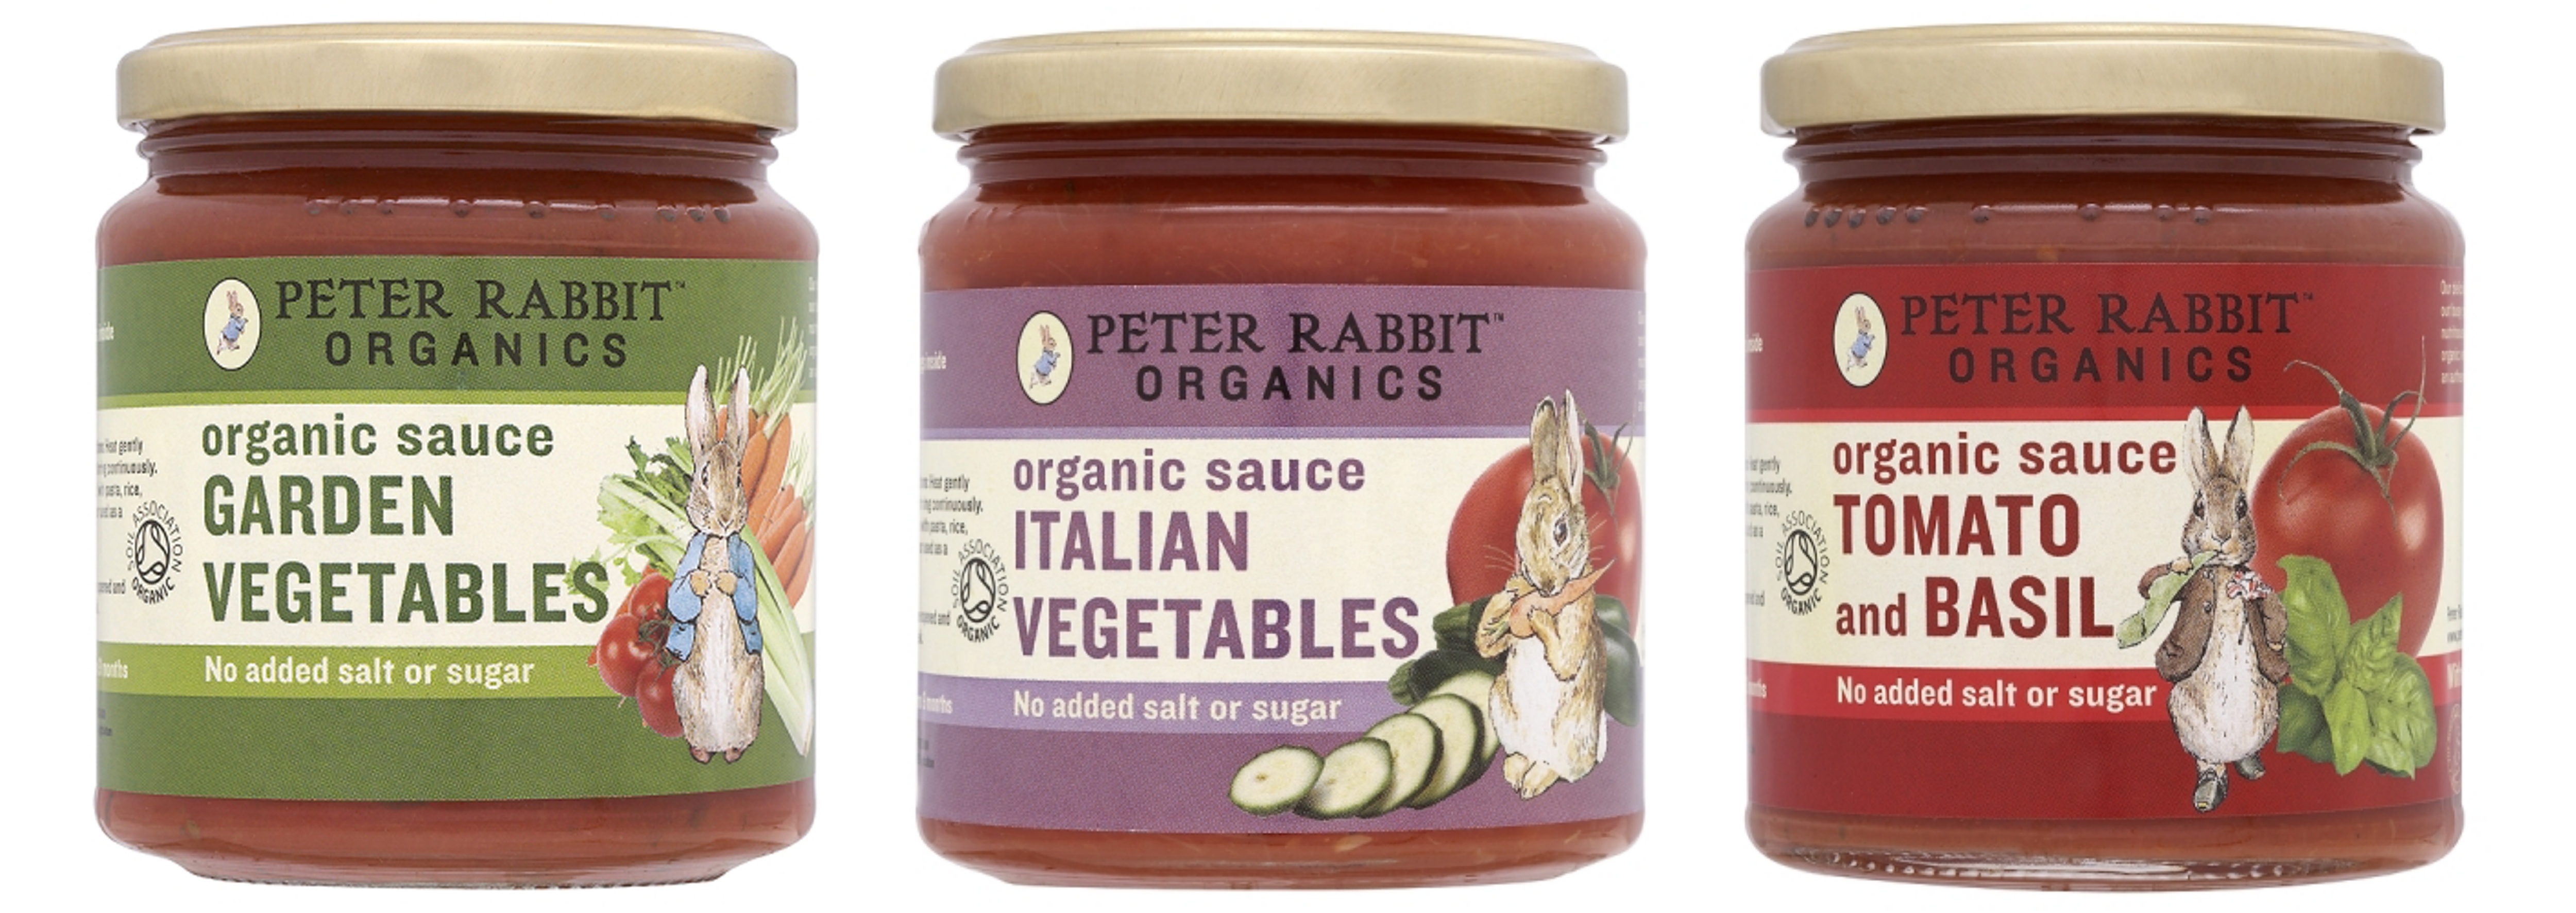 Peter rabbit Organics sauces